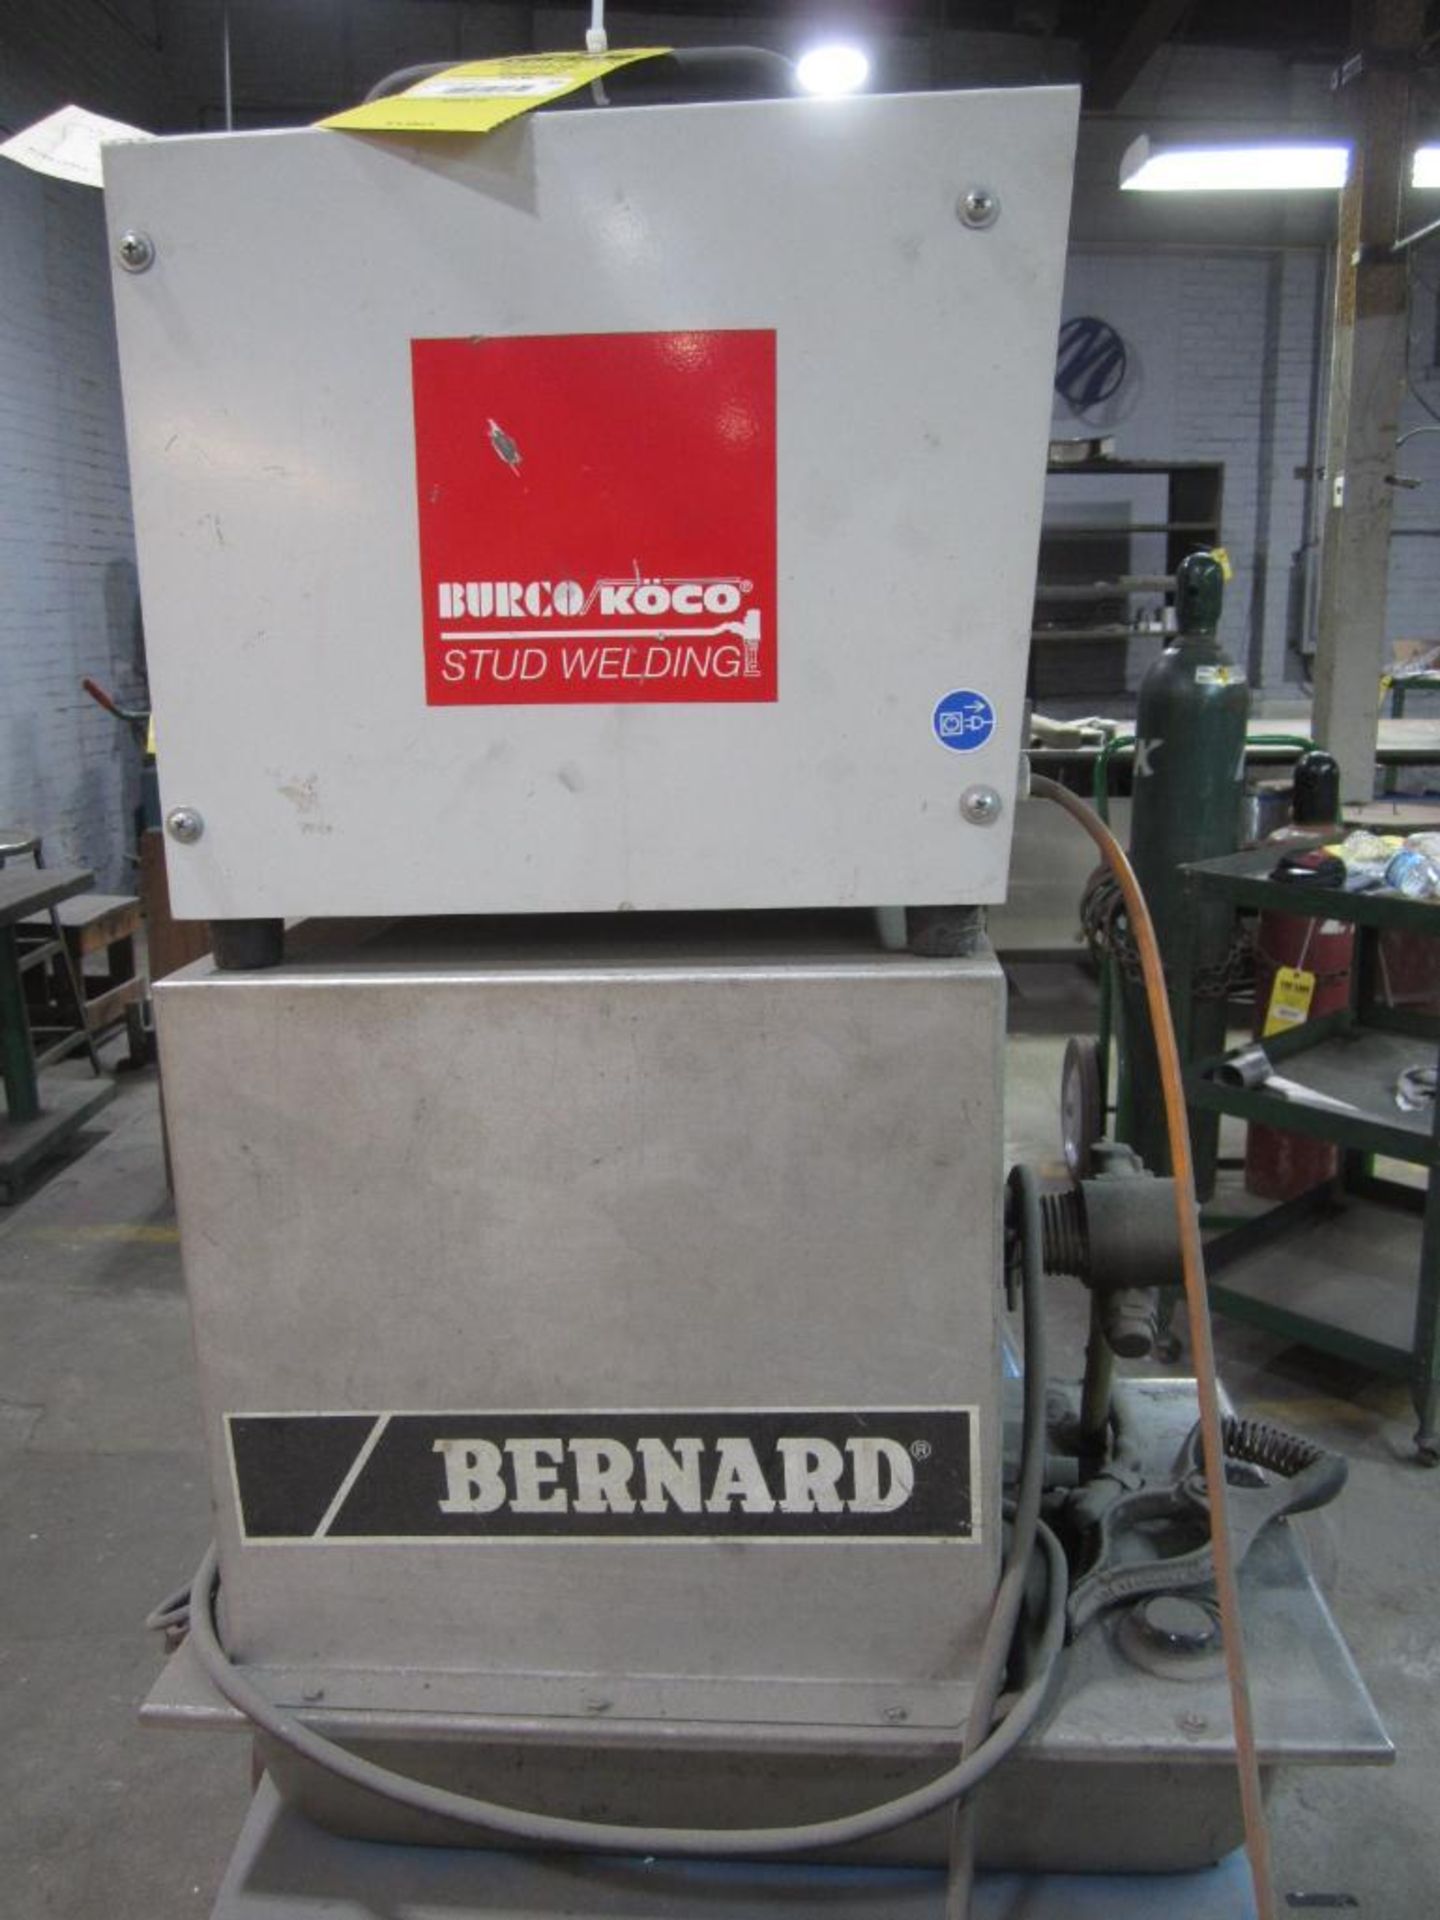 Burco Koco stud welding with Bernard cooler - Image 2 of 5